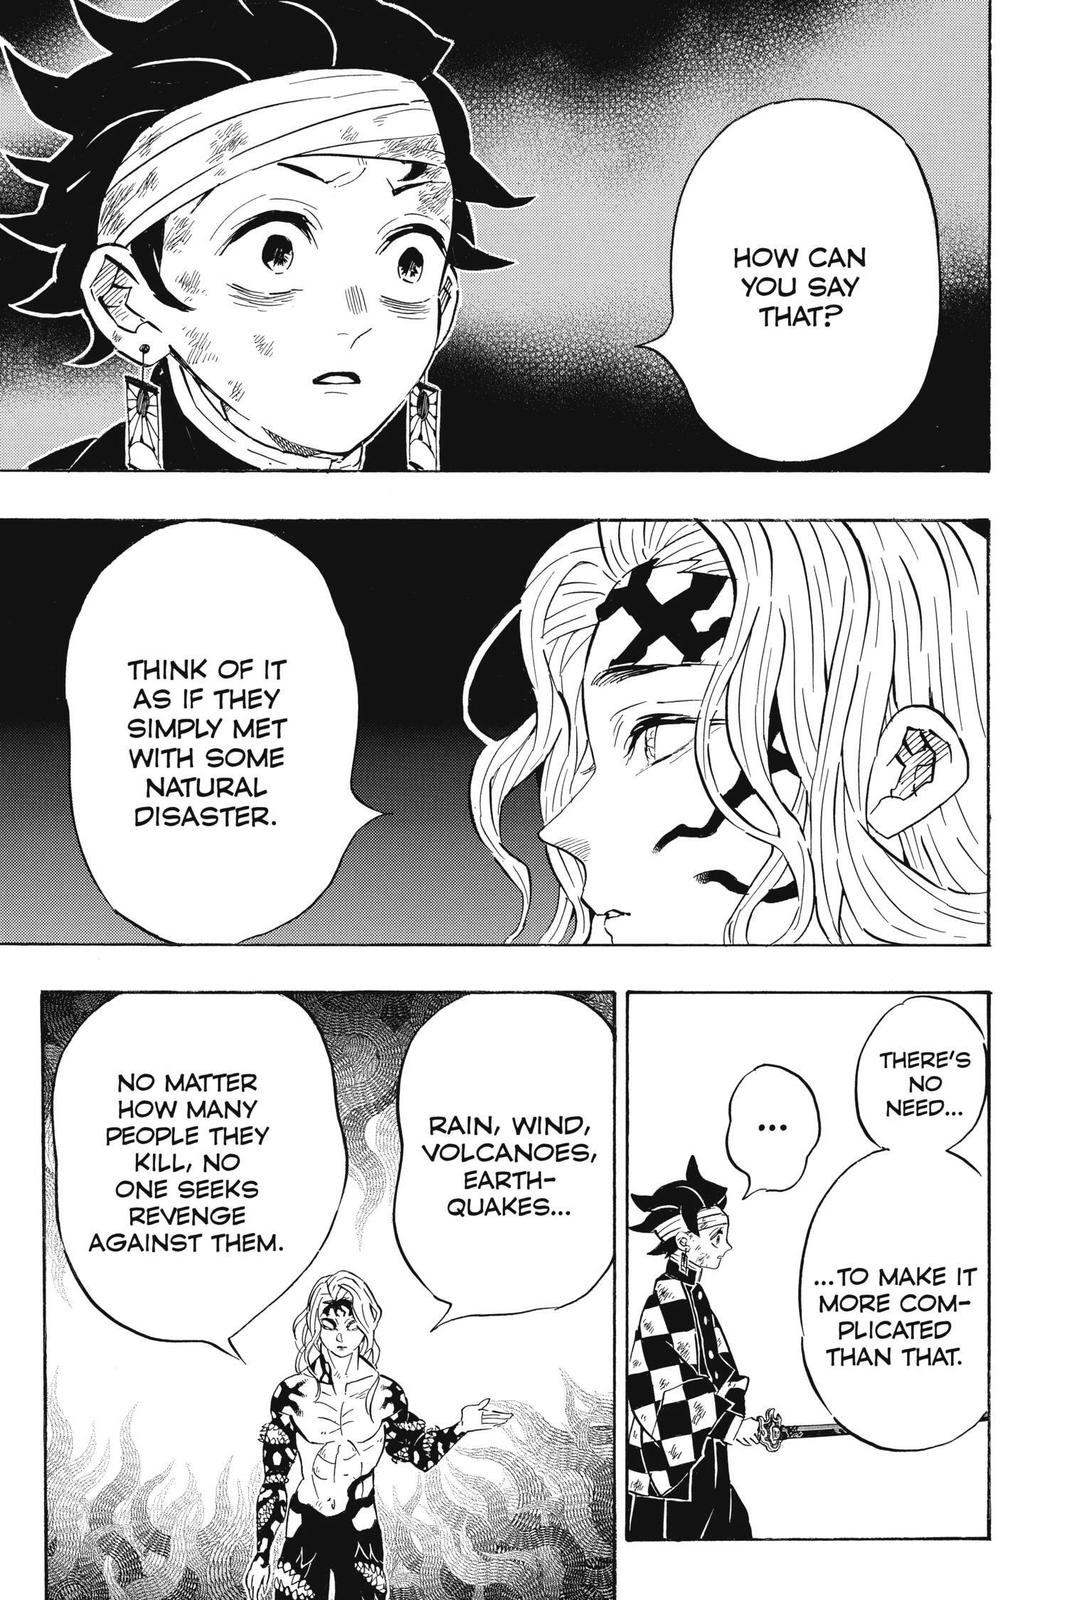 Demon Slayer Manga Manga Chapter - 181 - image 12